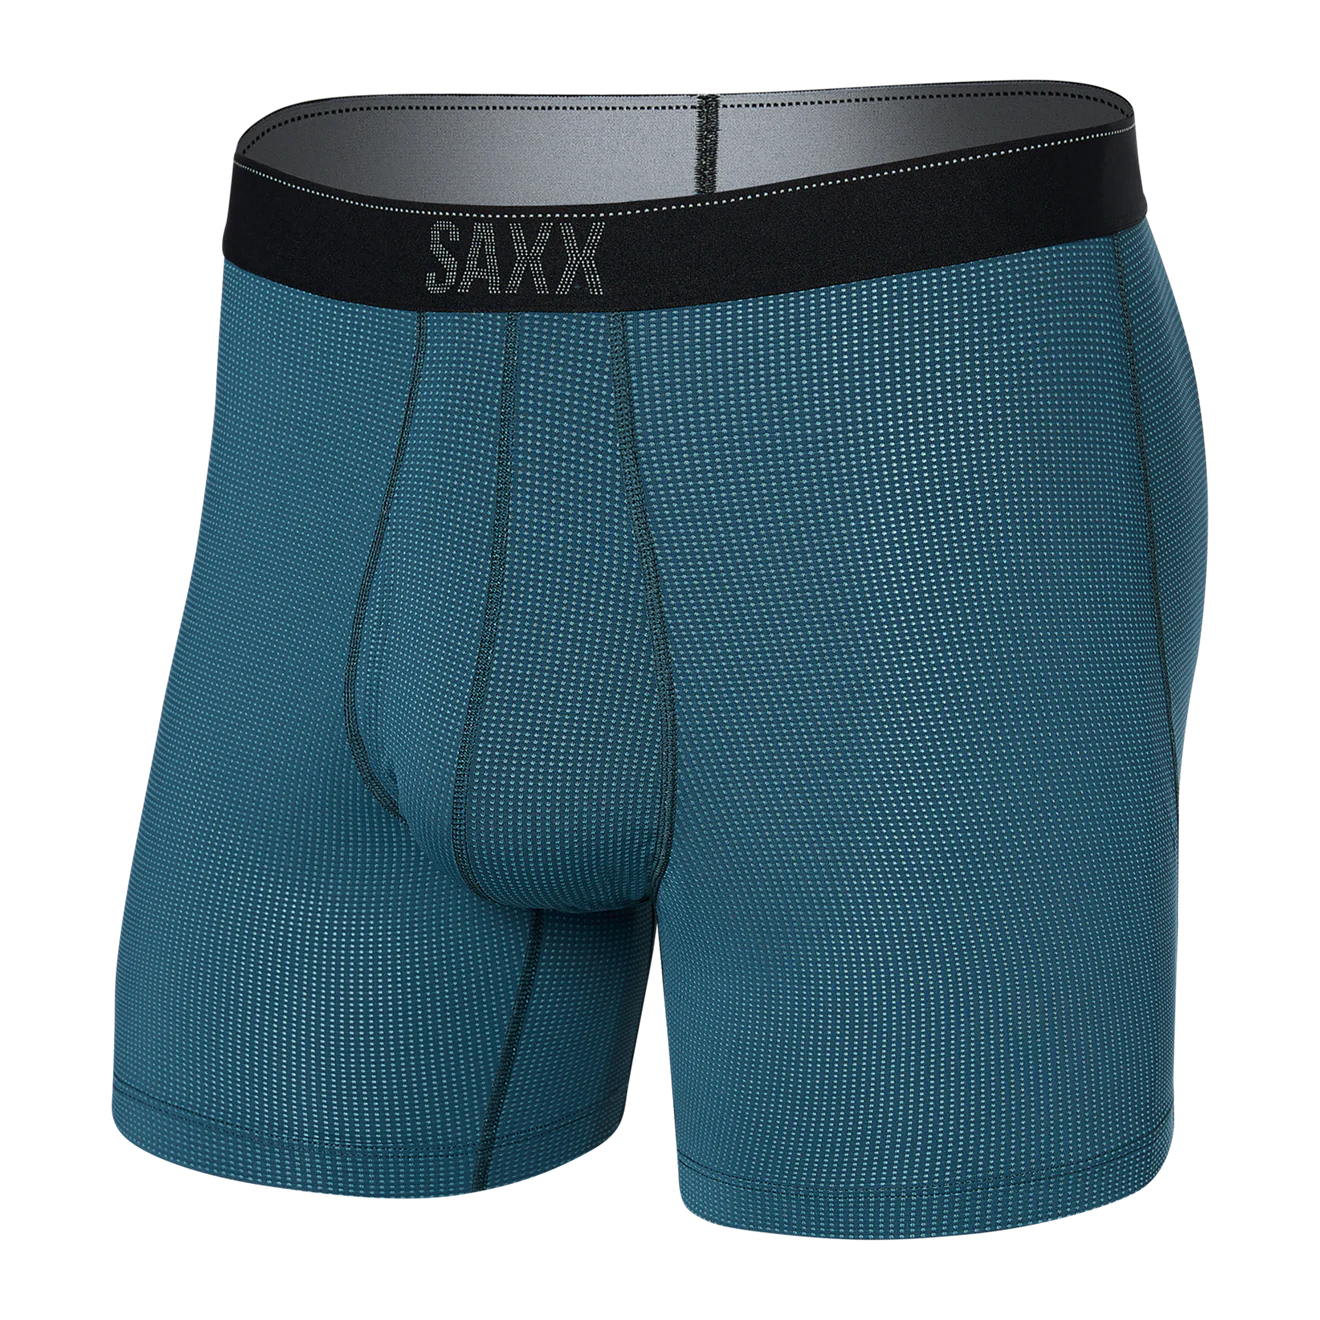 SAXX M Quest Boxer Brief STORM BLUE